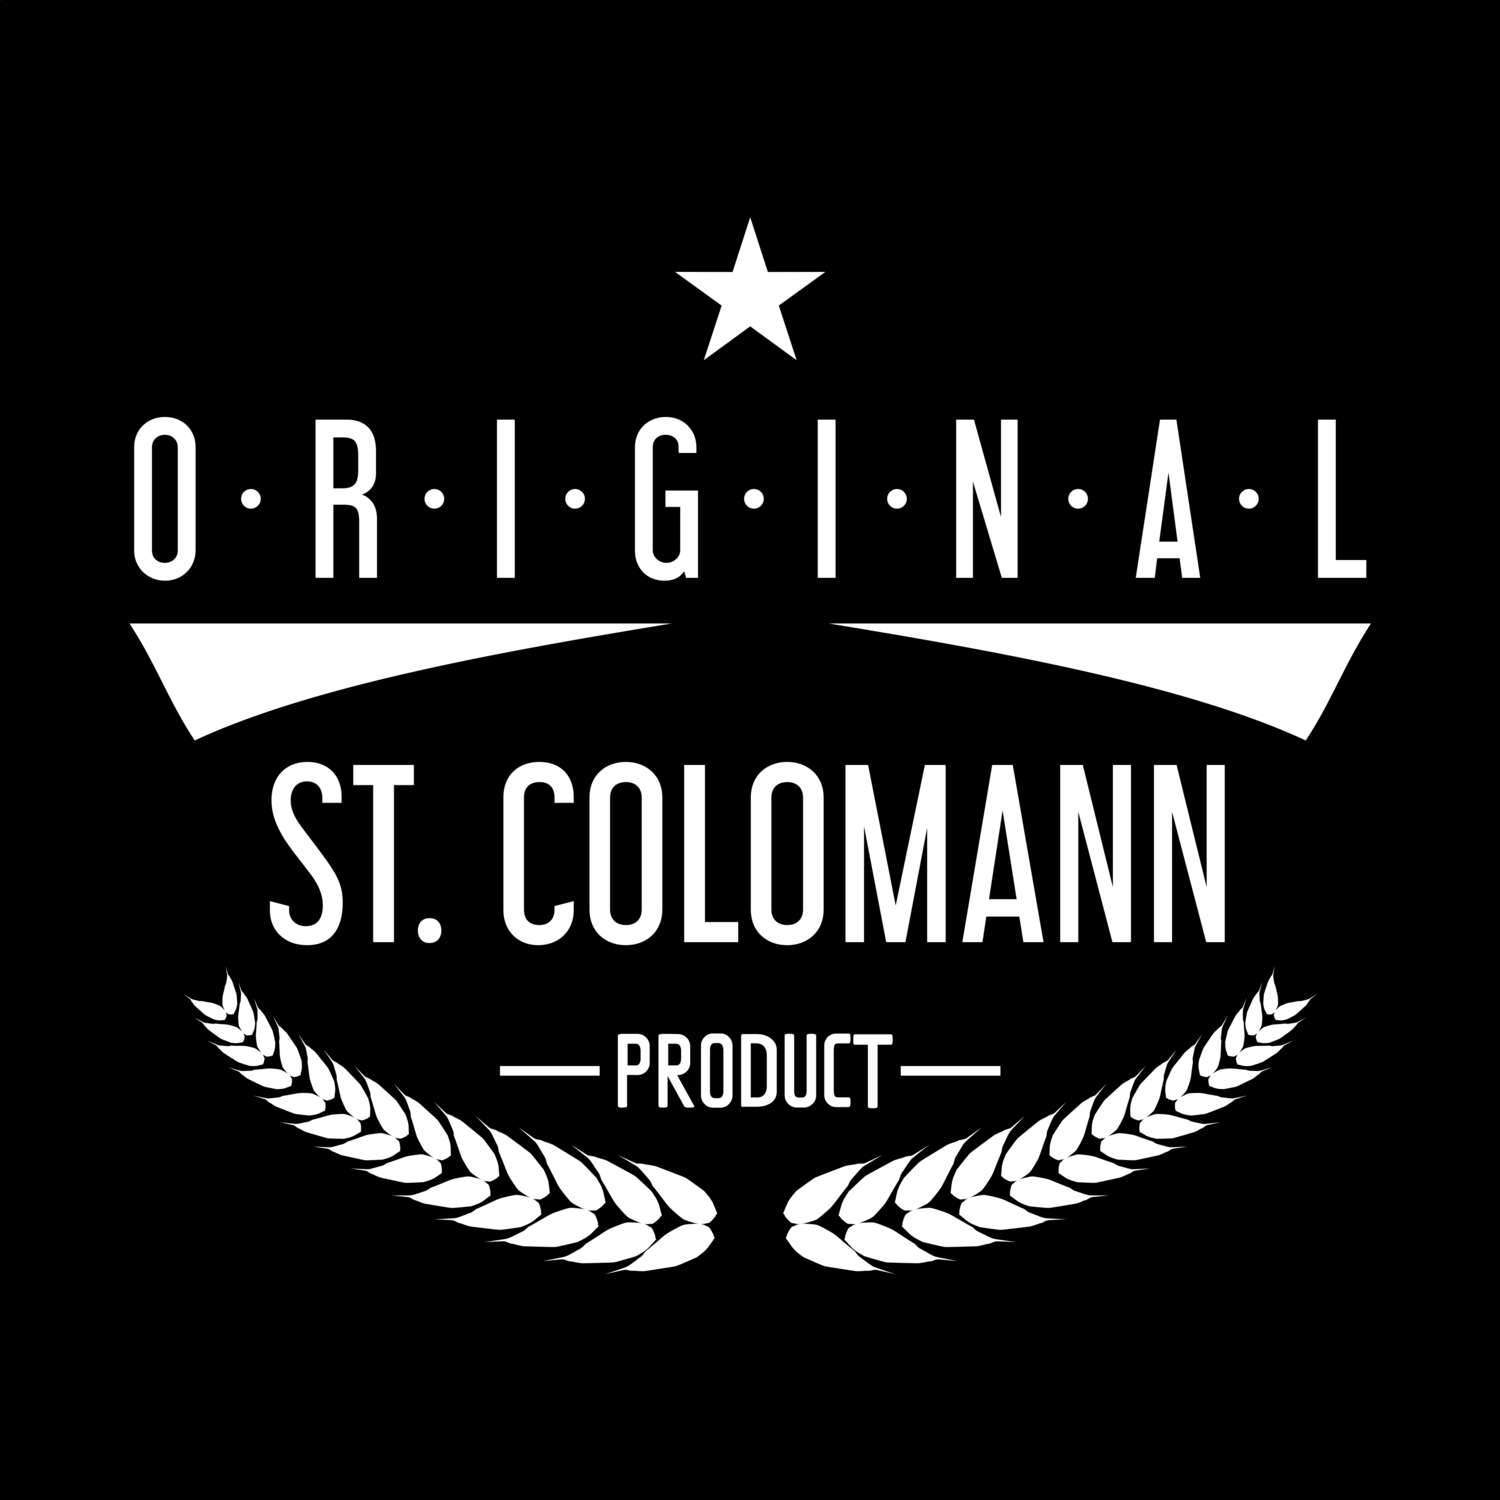 St. Colomann T-Shirt »Original Product«